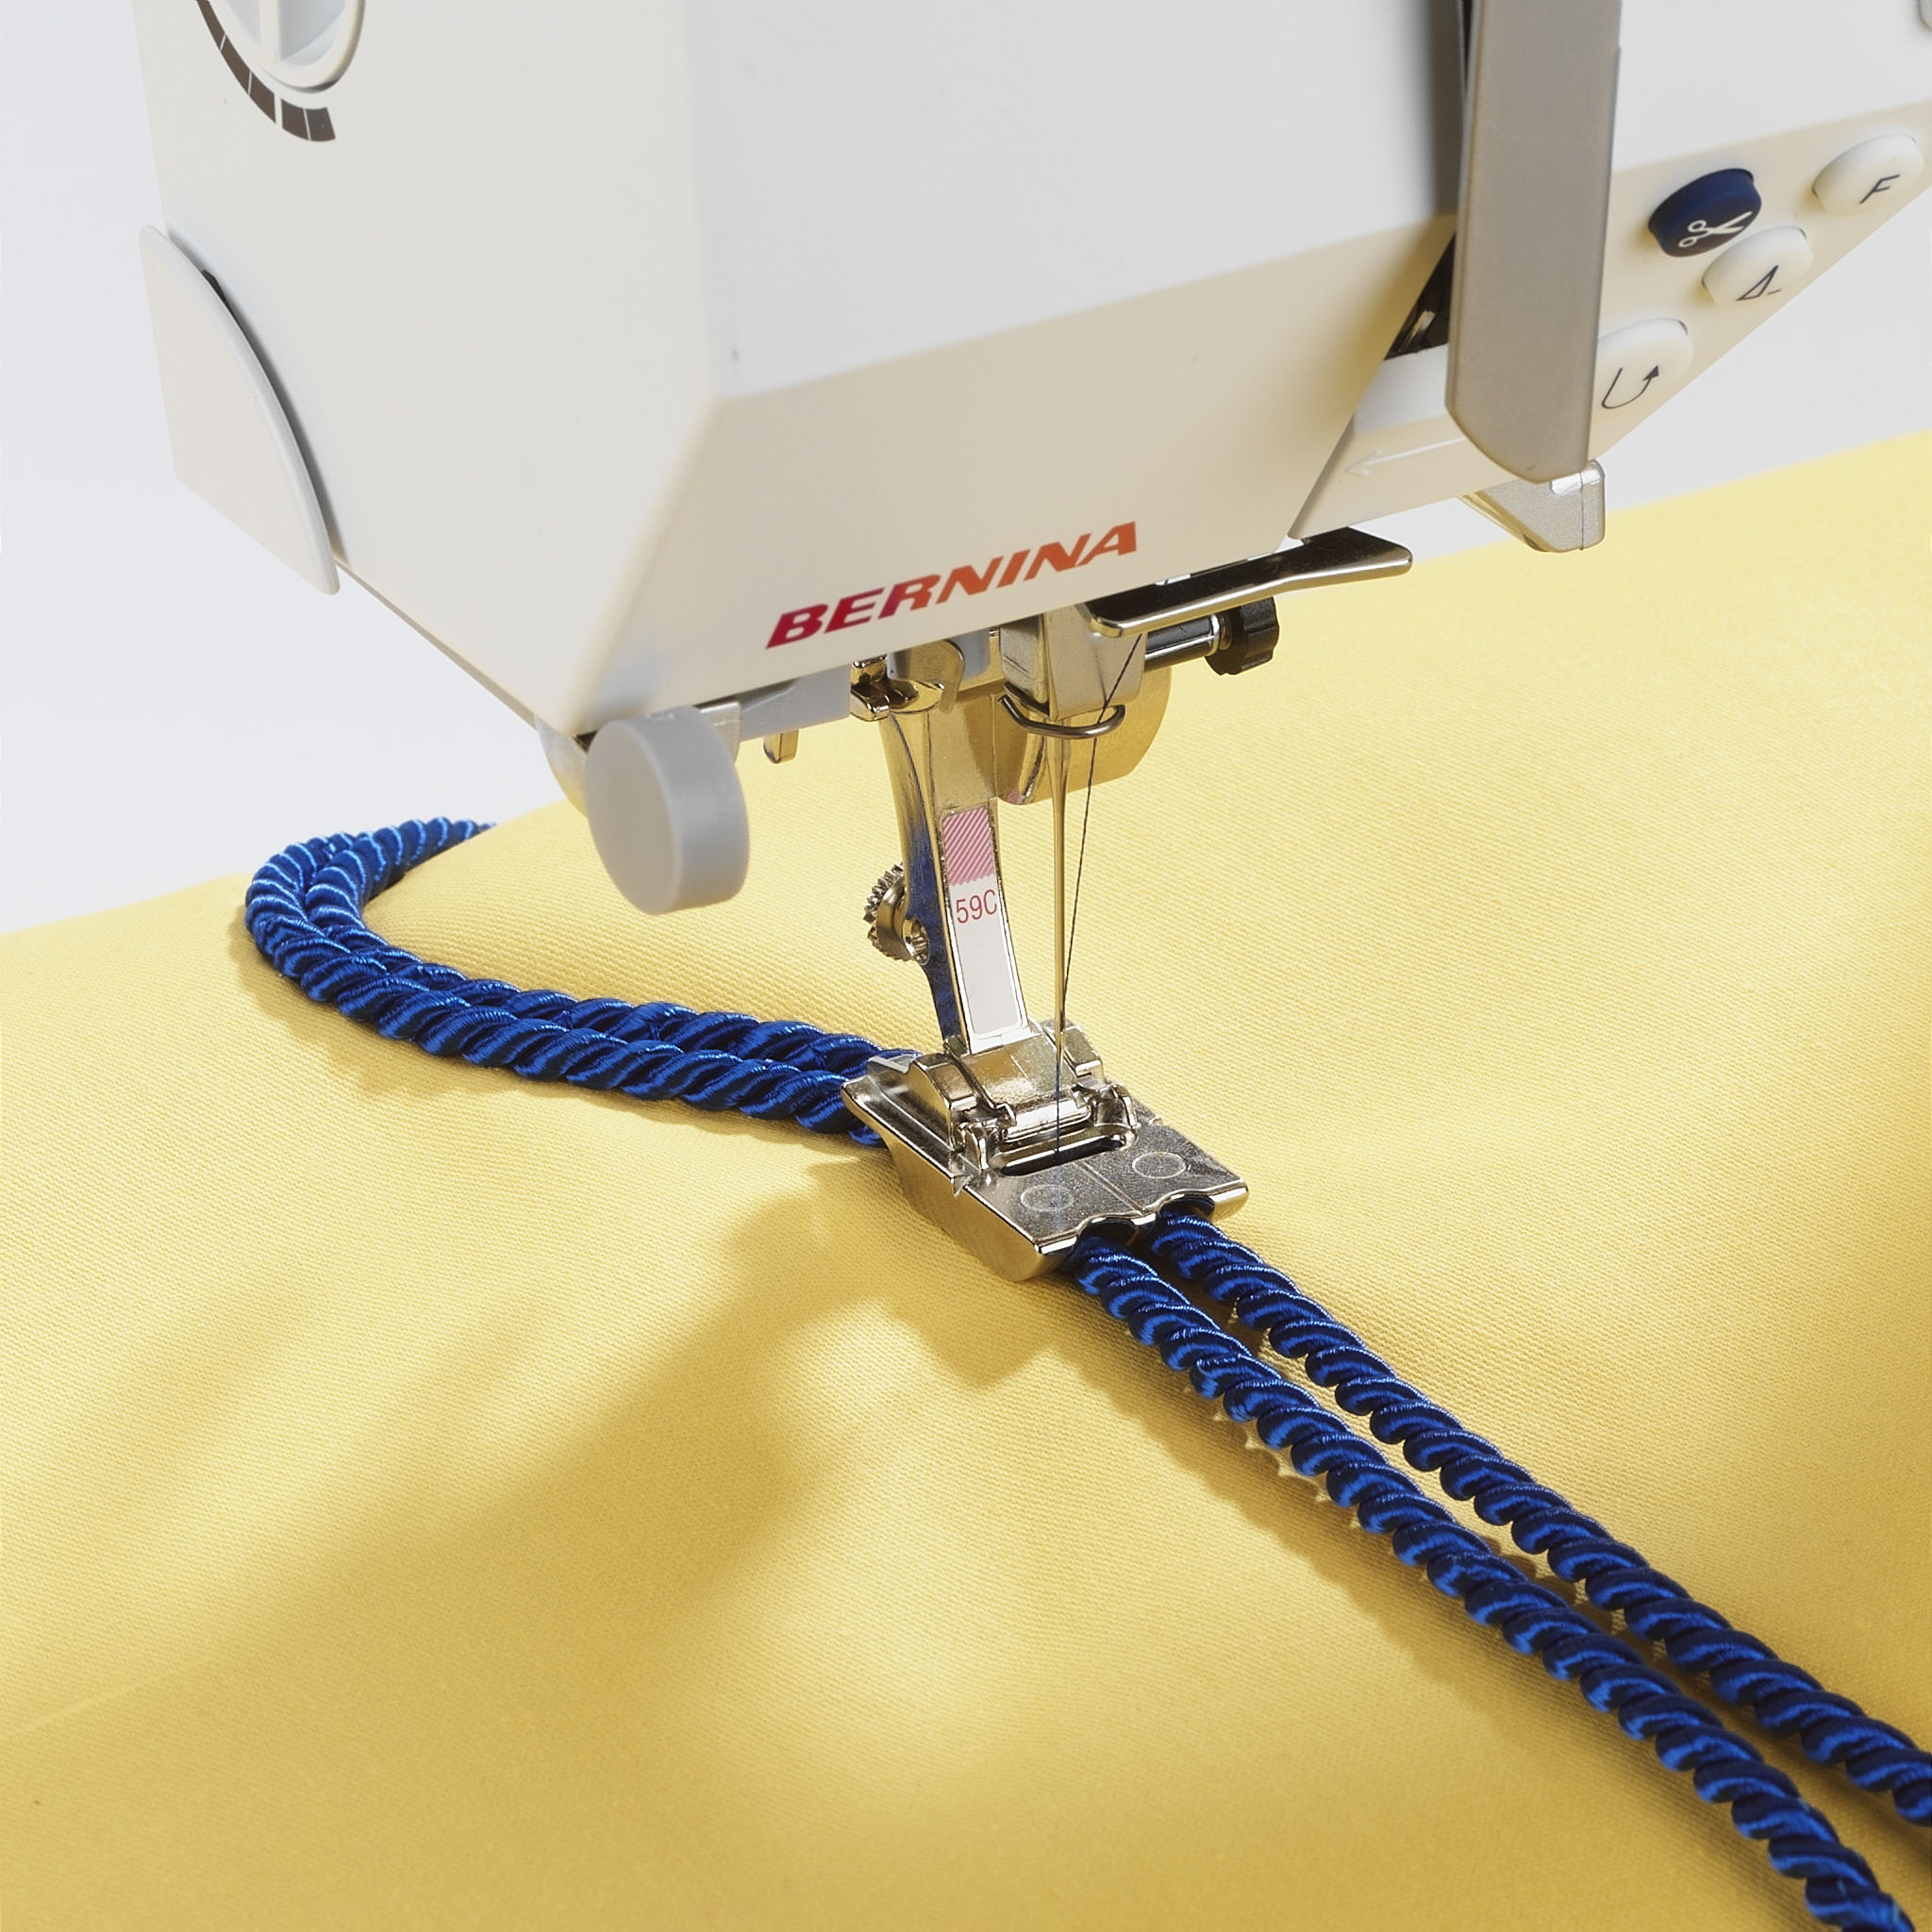 Двойная лапка Bernina # 59C для вшивания шнуров